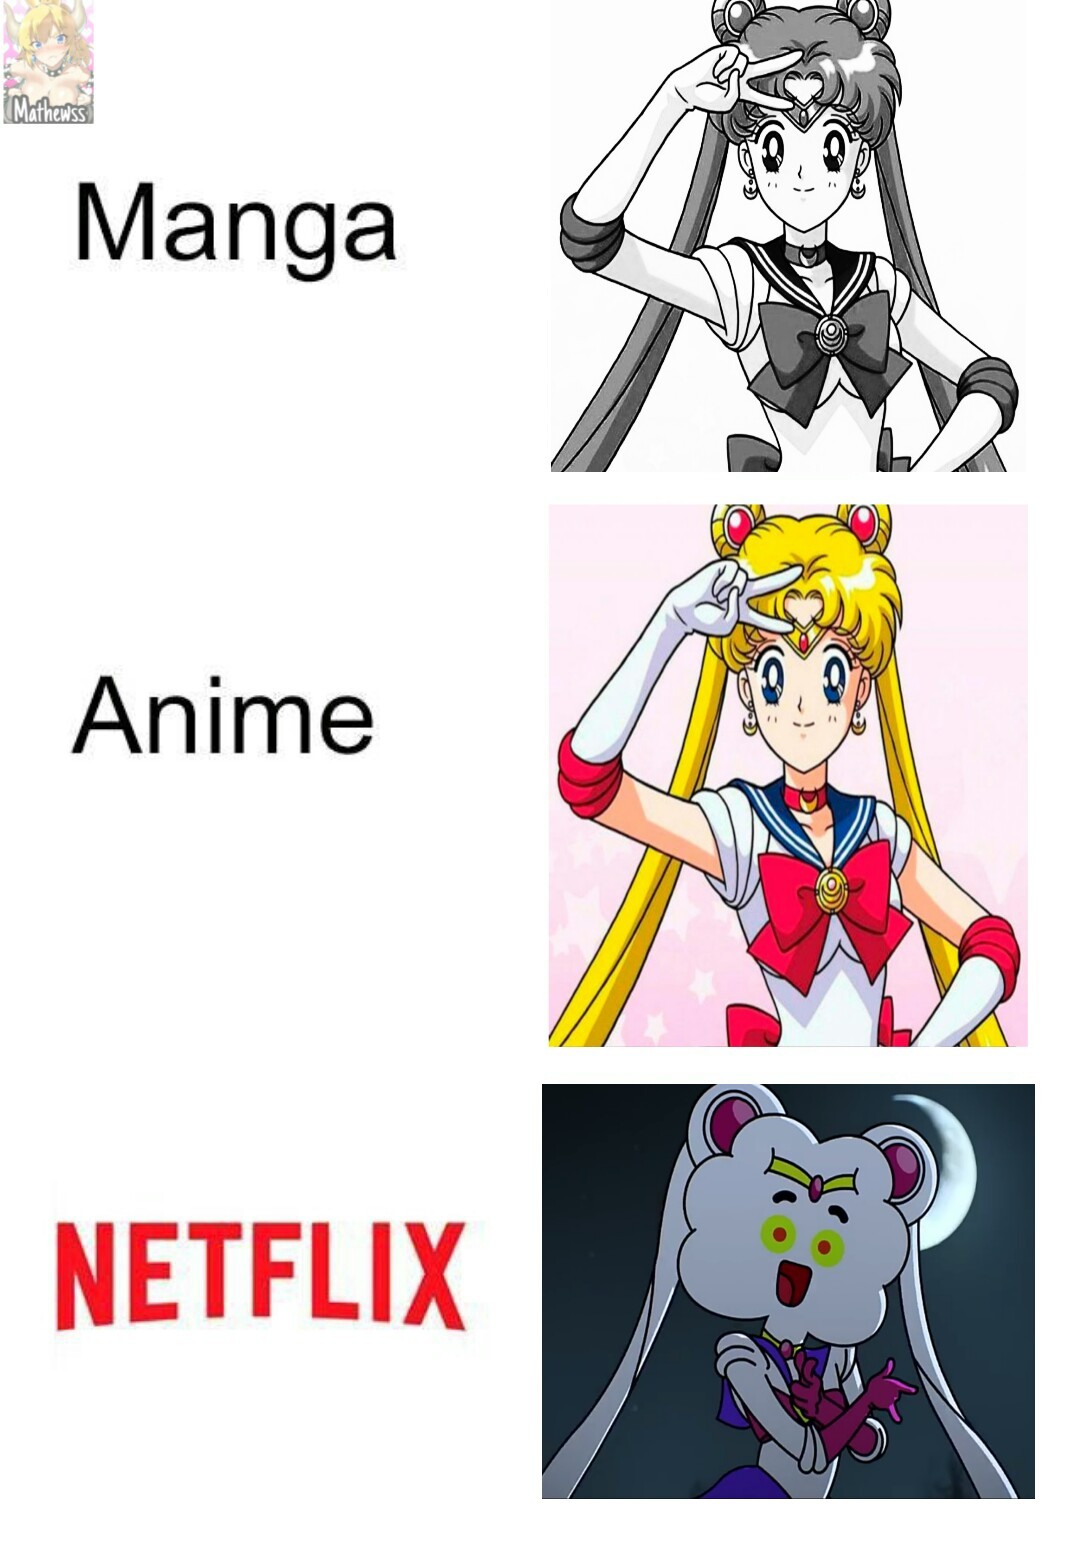 El Netflix - meme